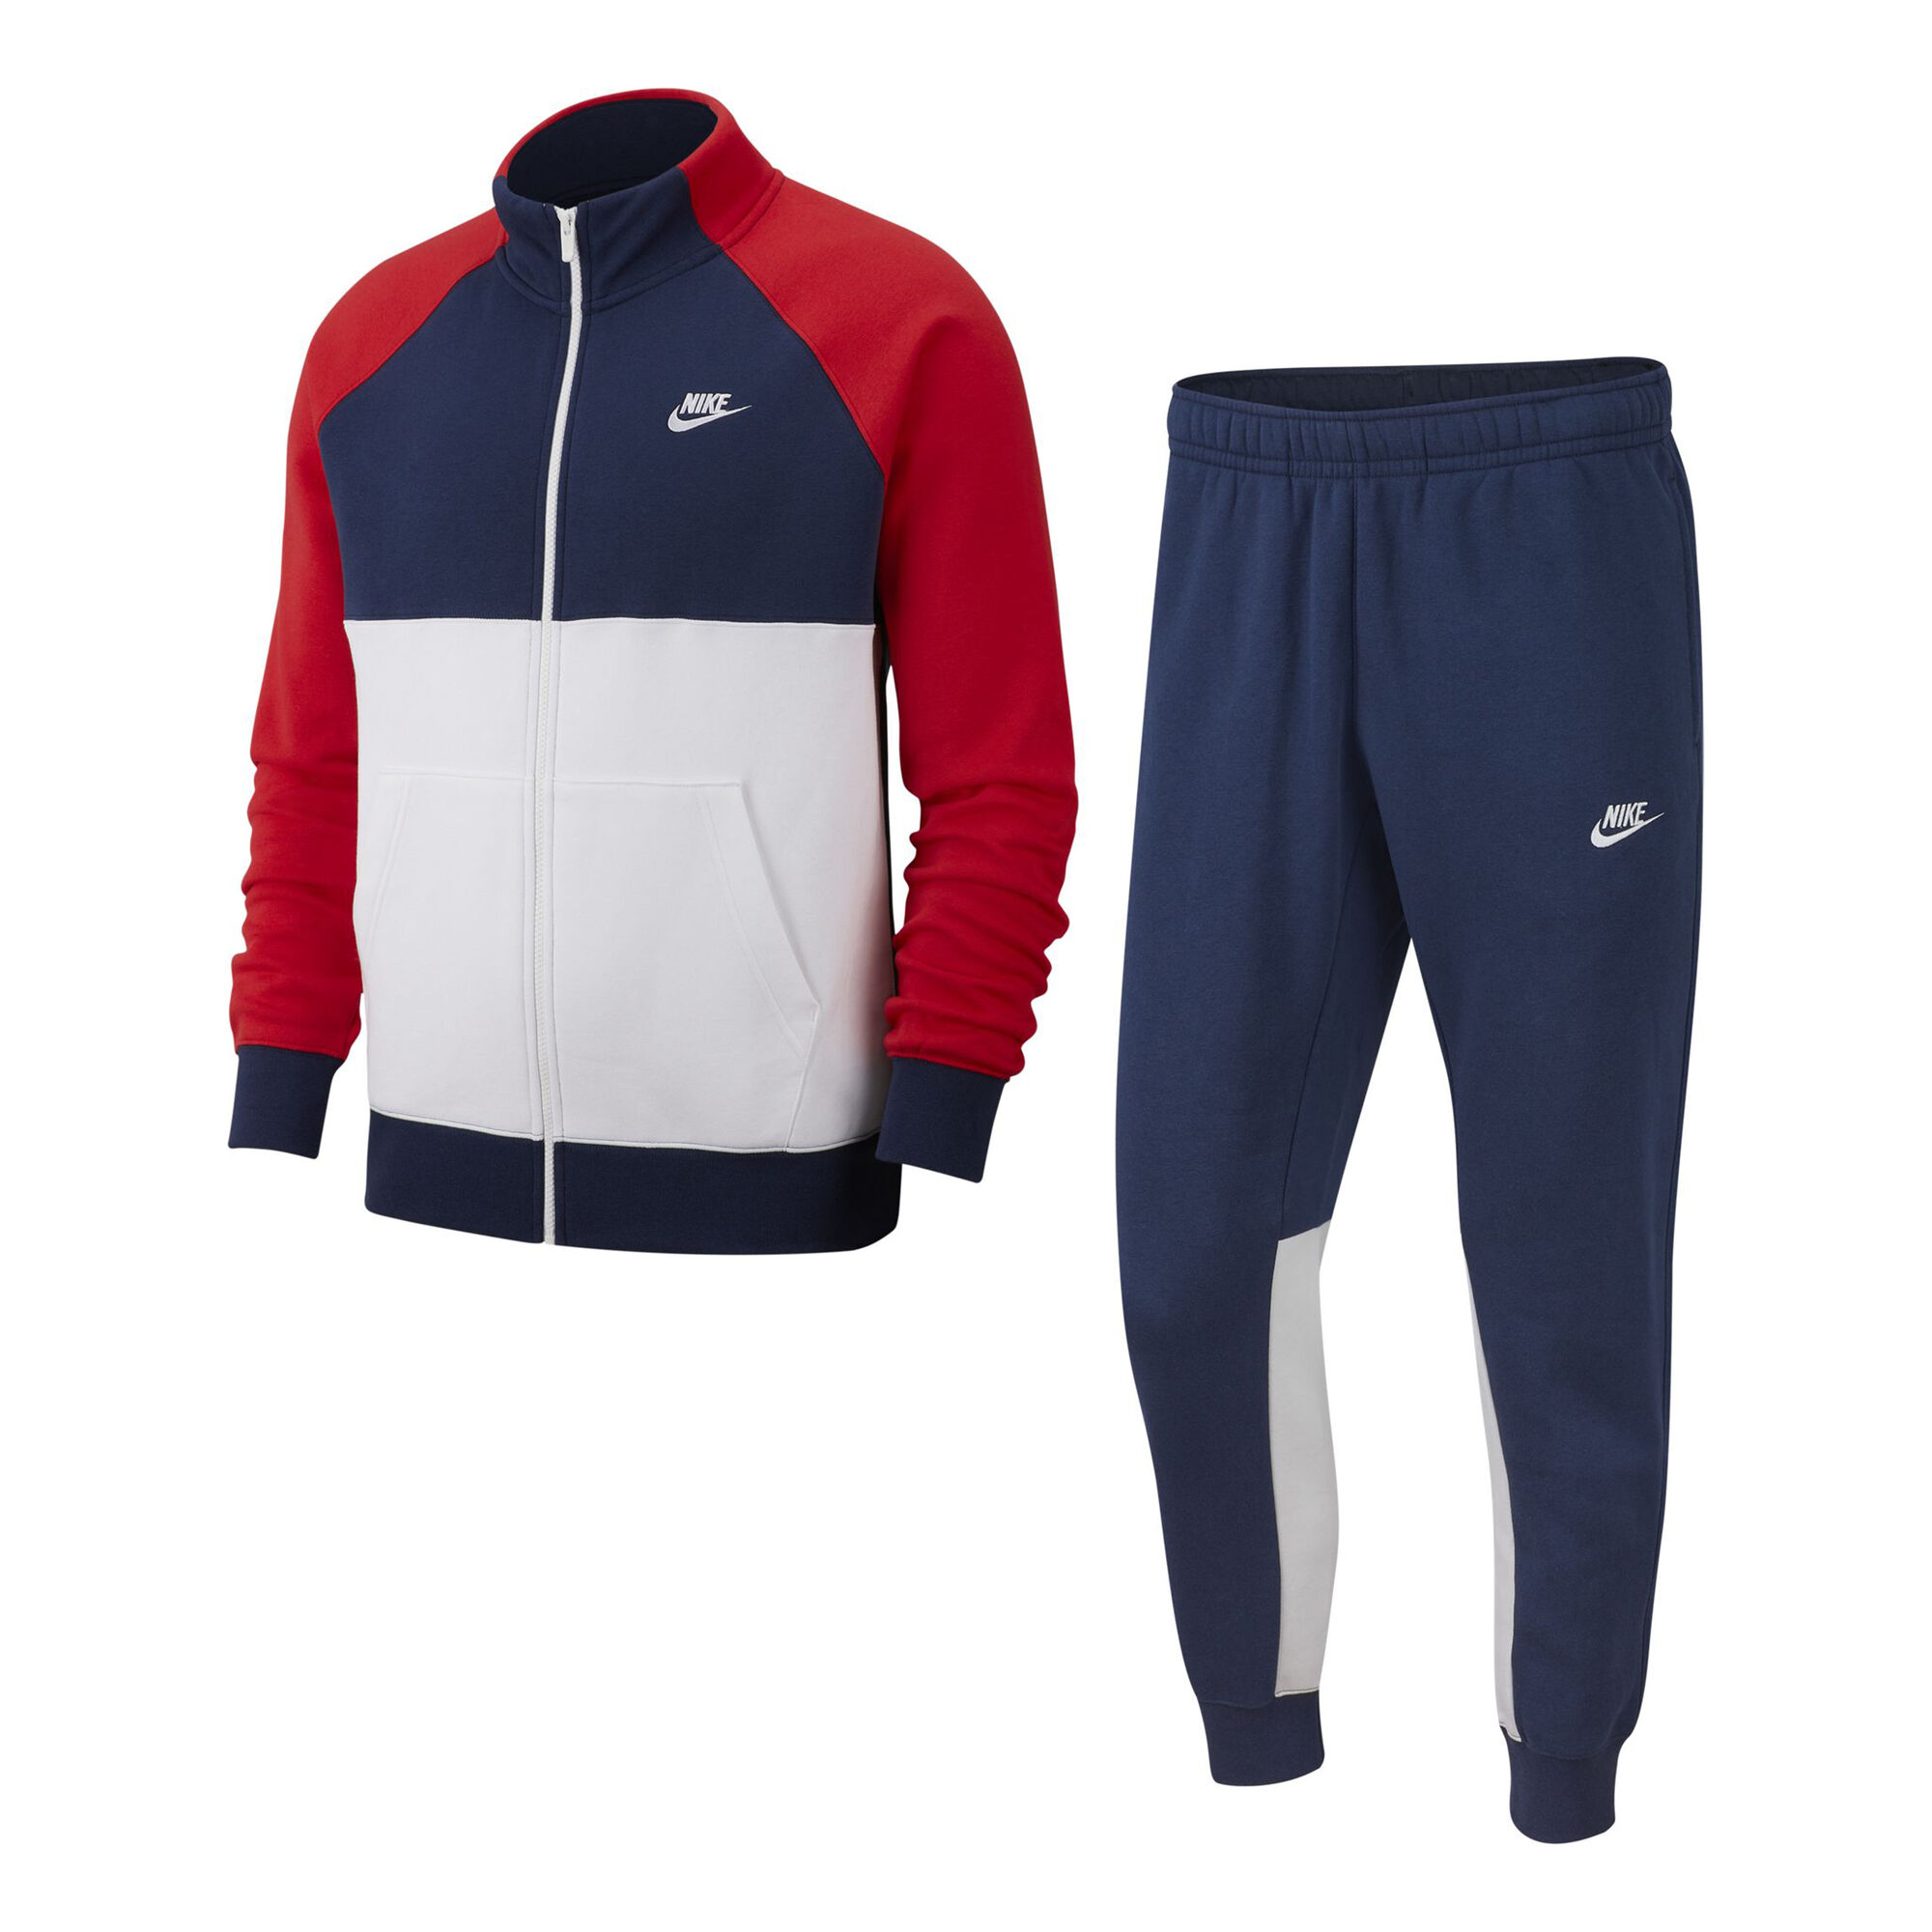 Sitcom Derde handelaar Nike Sportswear Trainingsanzug Herren - Dunkelblau, Weiß online kaufen |  Tennis-Point